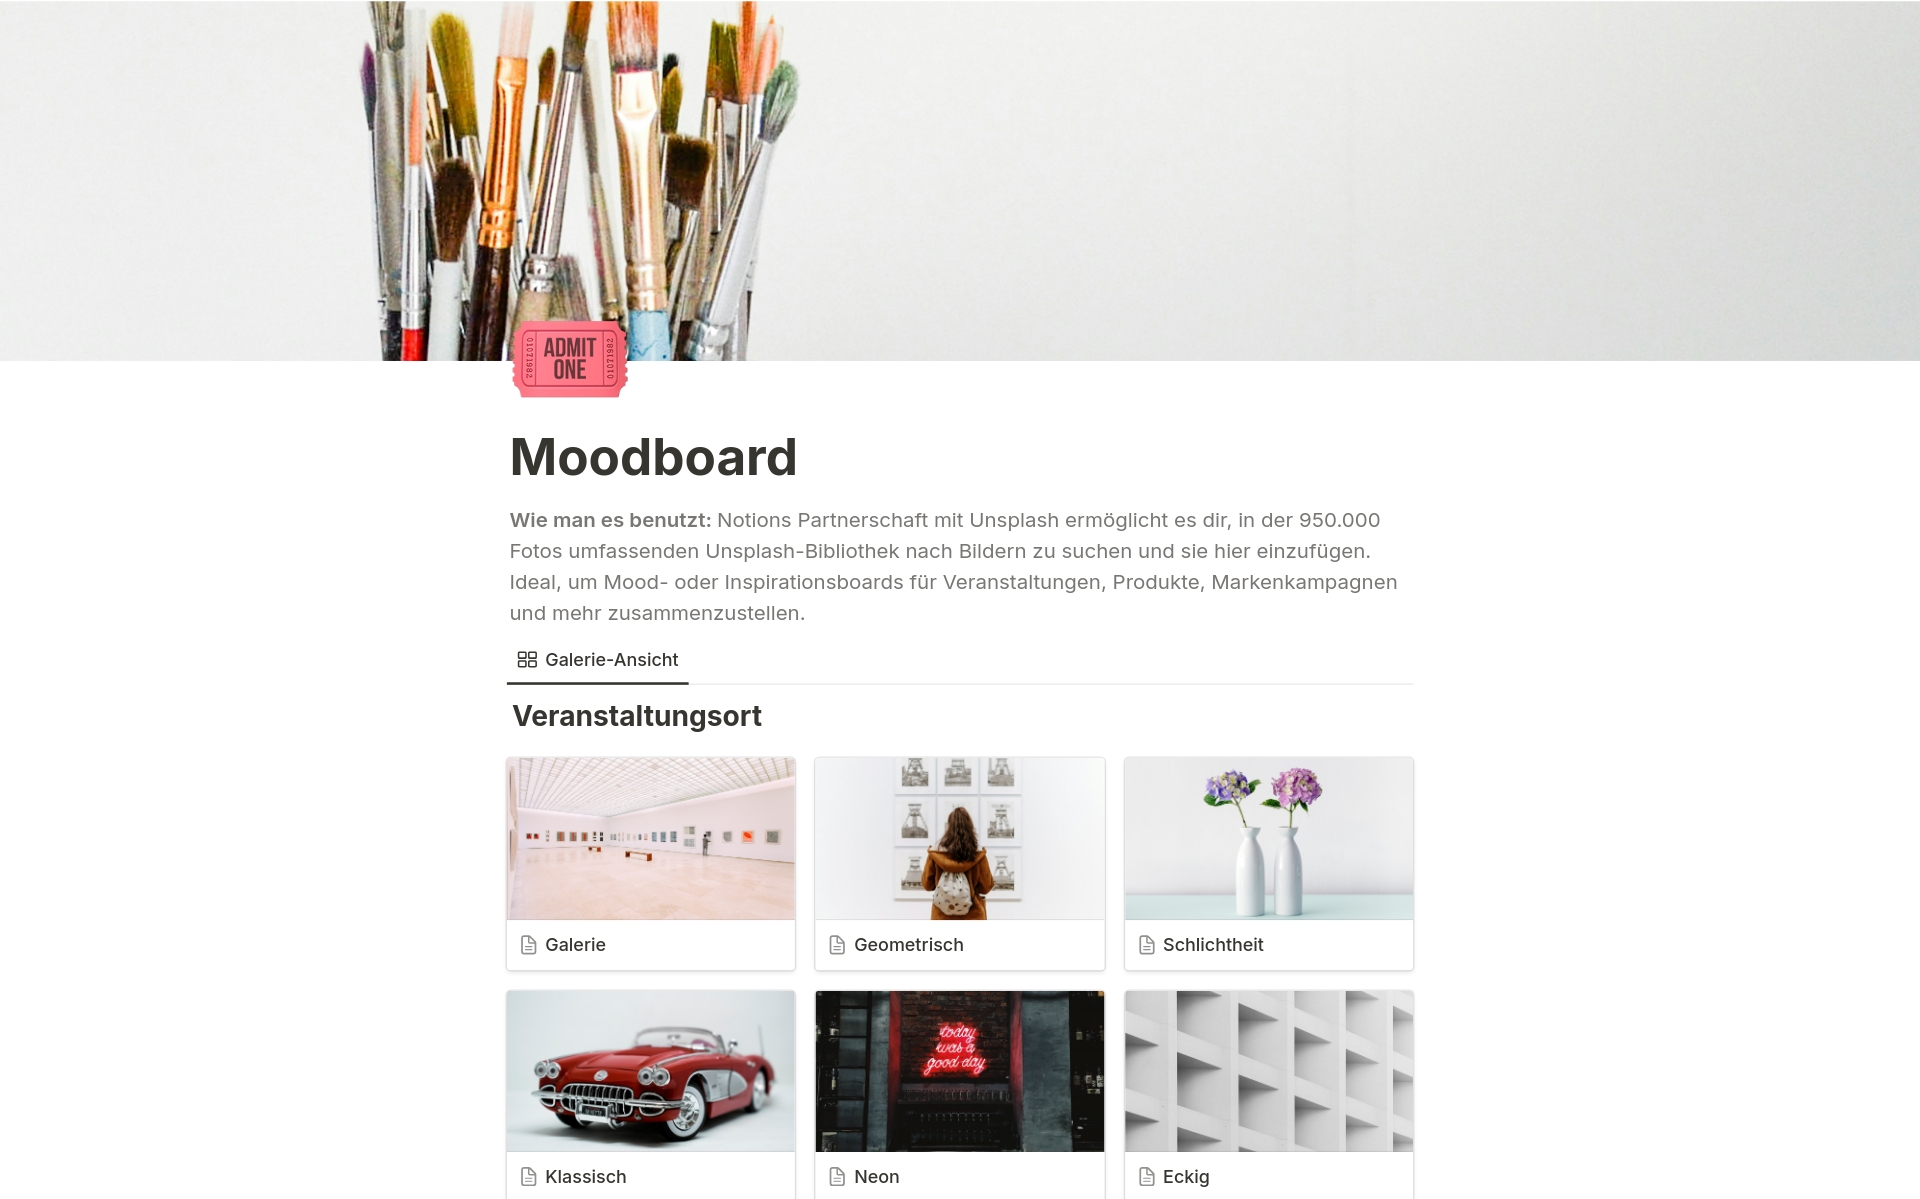 Stelle Mood- oder Inspirationsboards für Veranstaltungen, Produkte, Markenkampagnen und mehr zusammen.